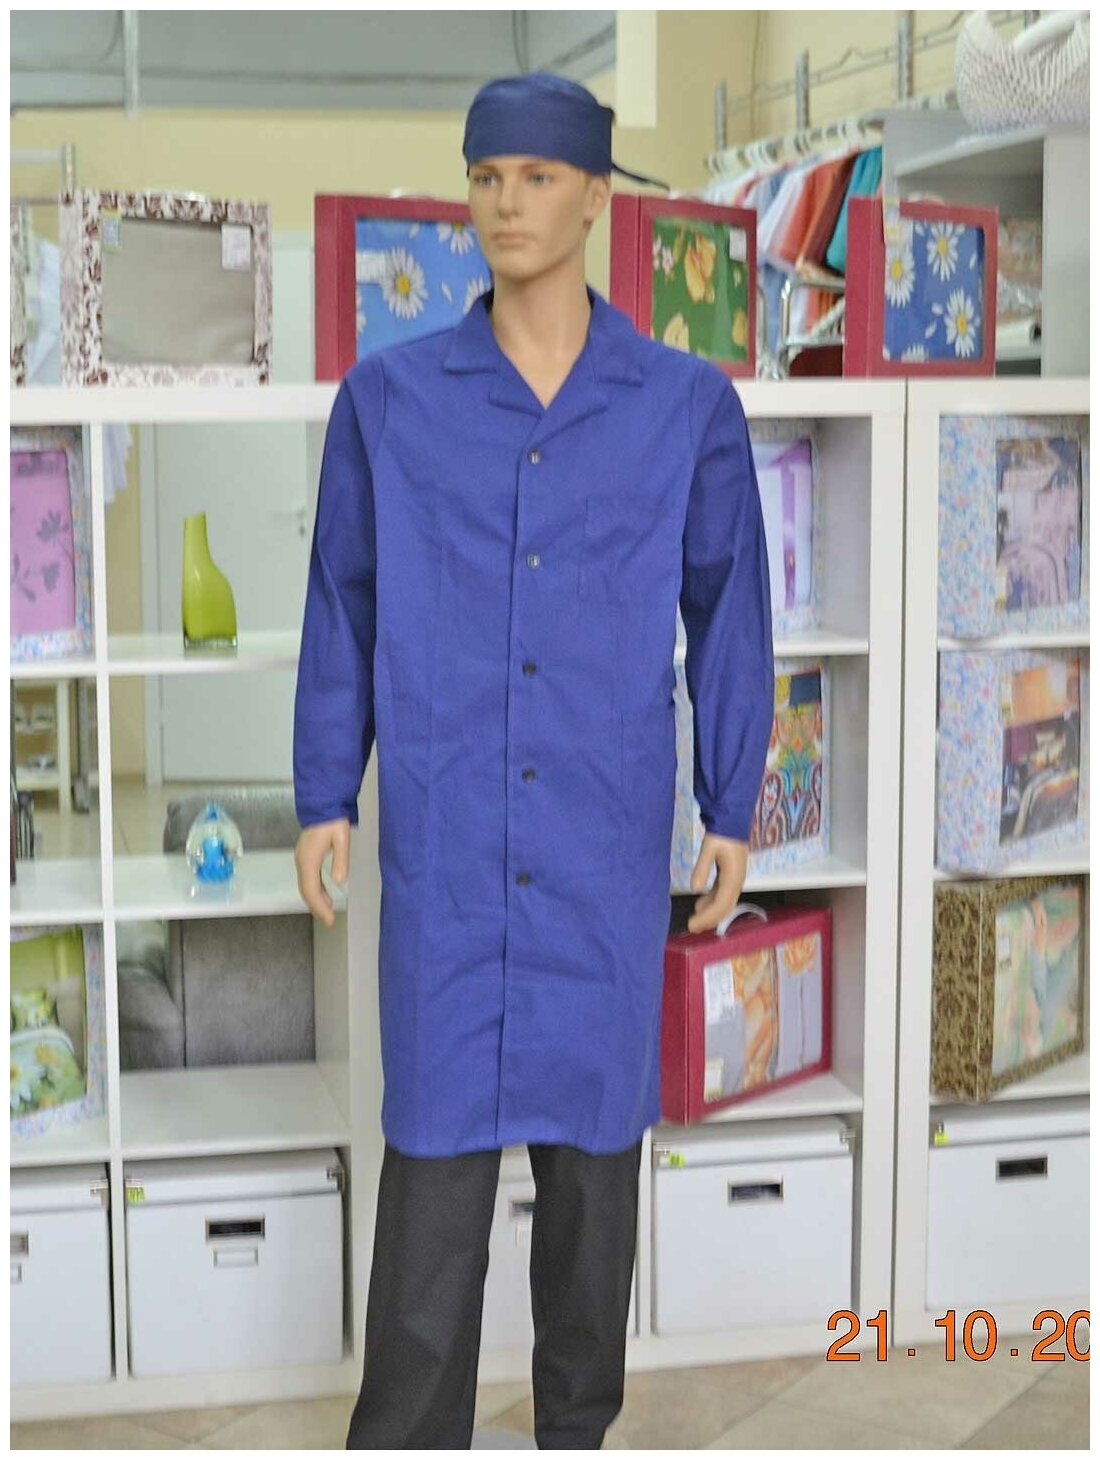 Халат для уроков труда и химии, производитель Фабрика швейных изделий №3, модель М-3, размер 52-54, цвет синий